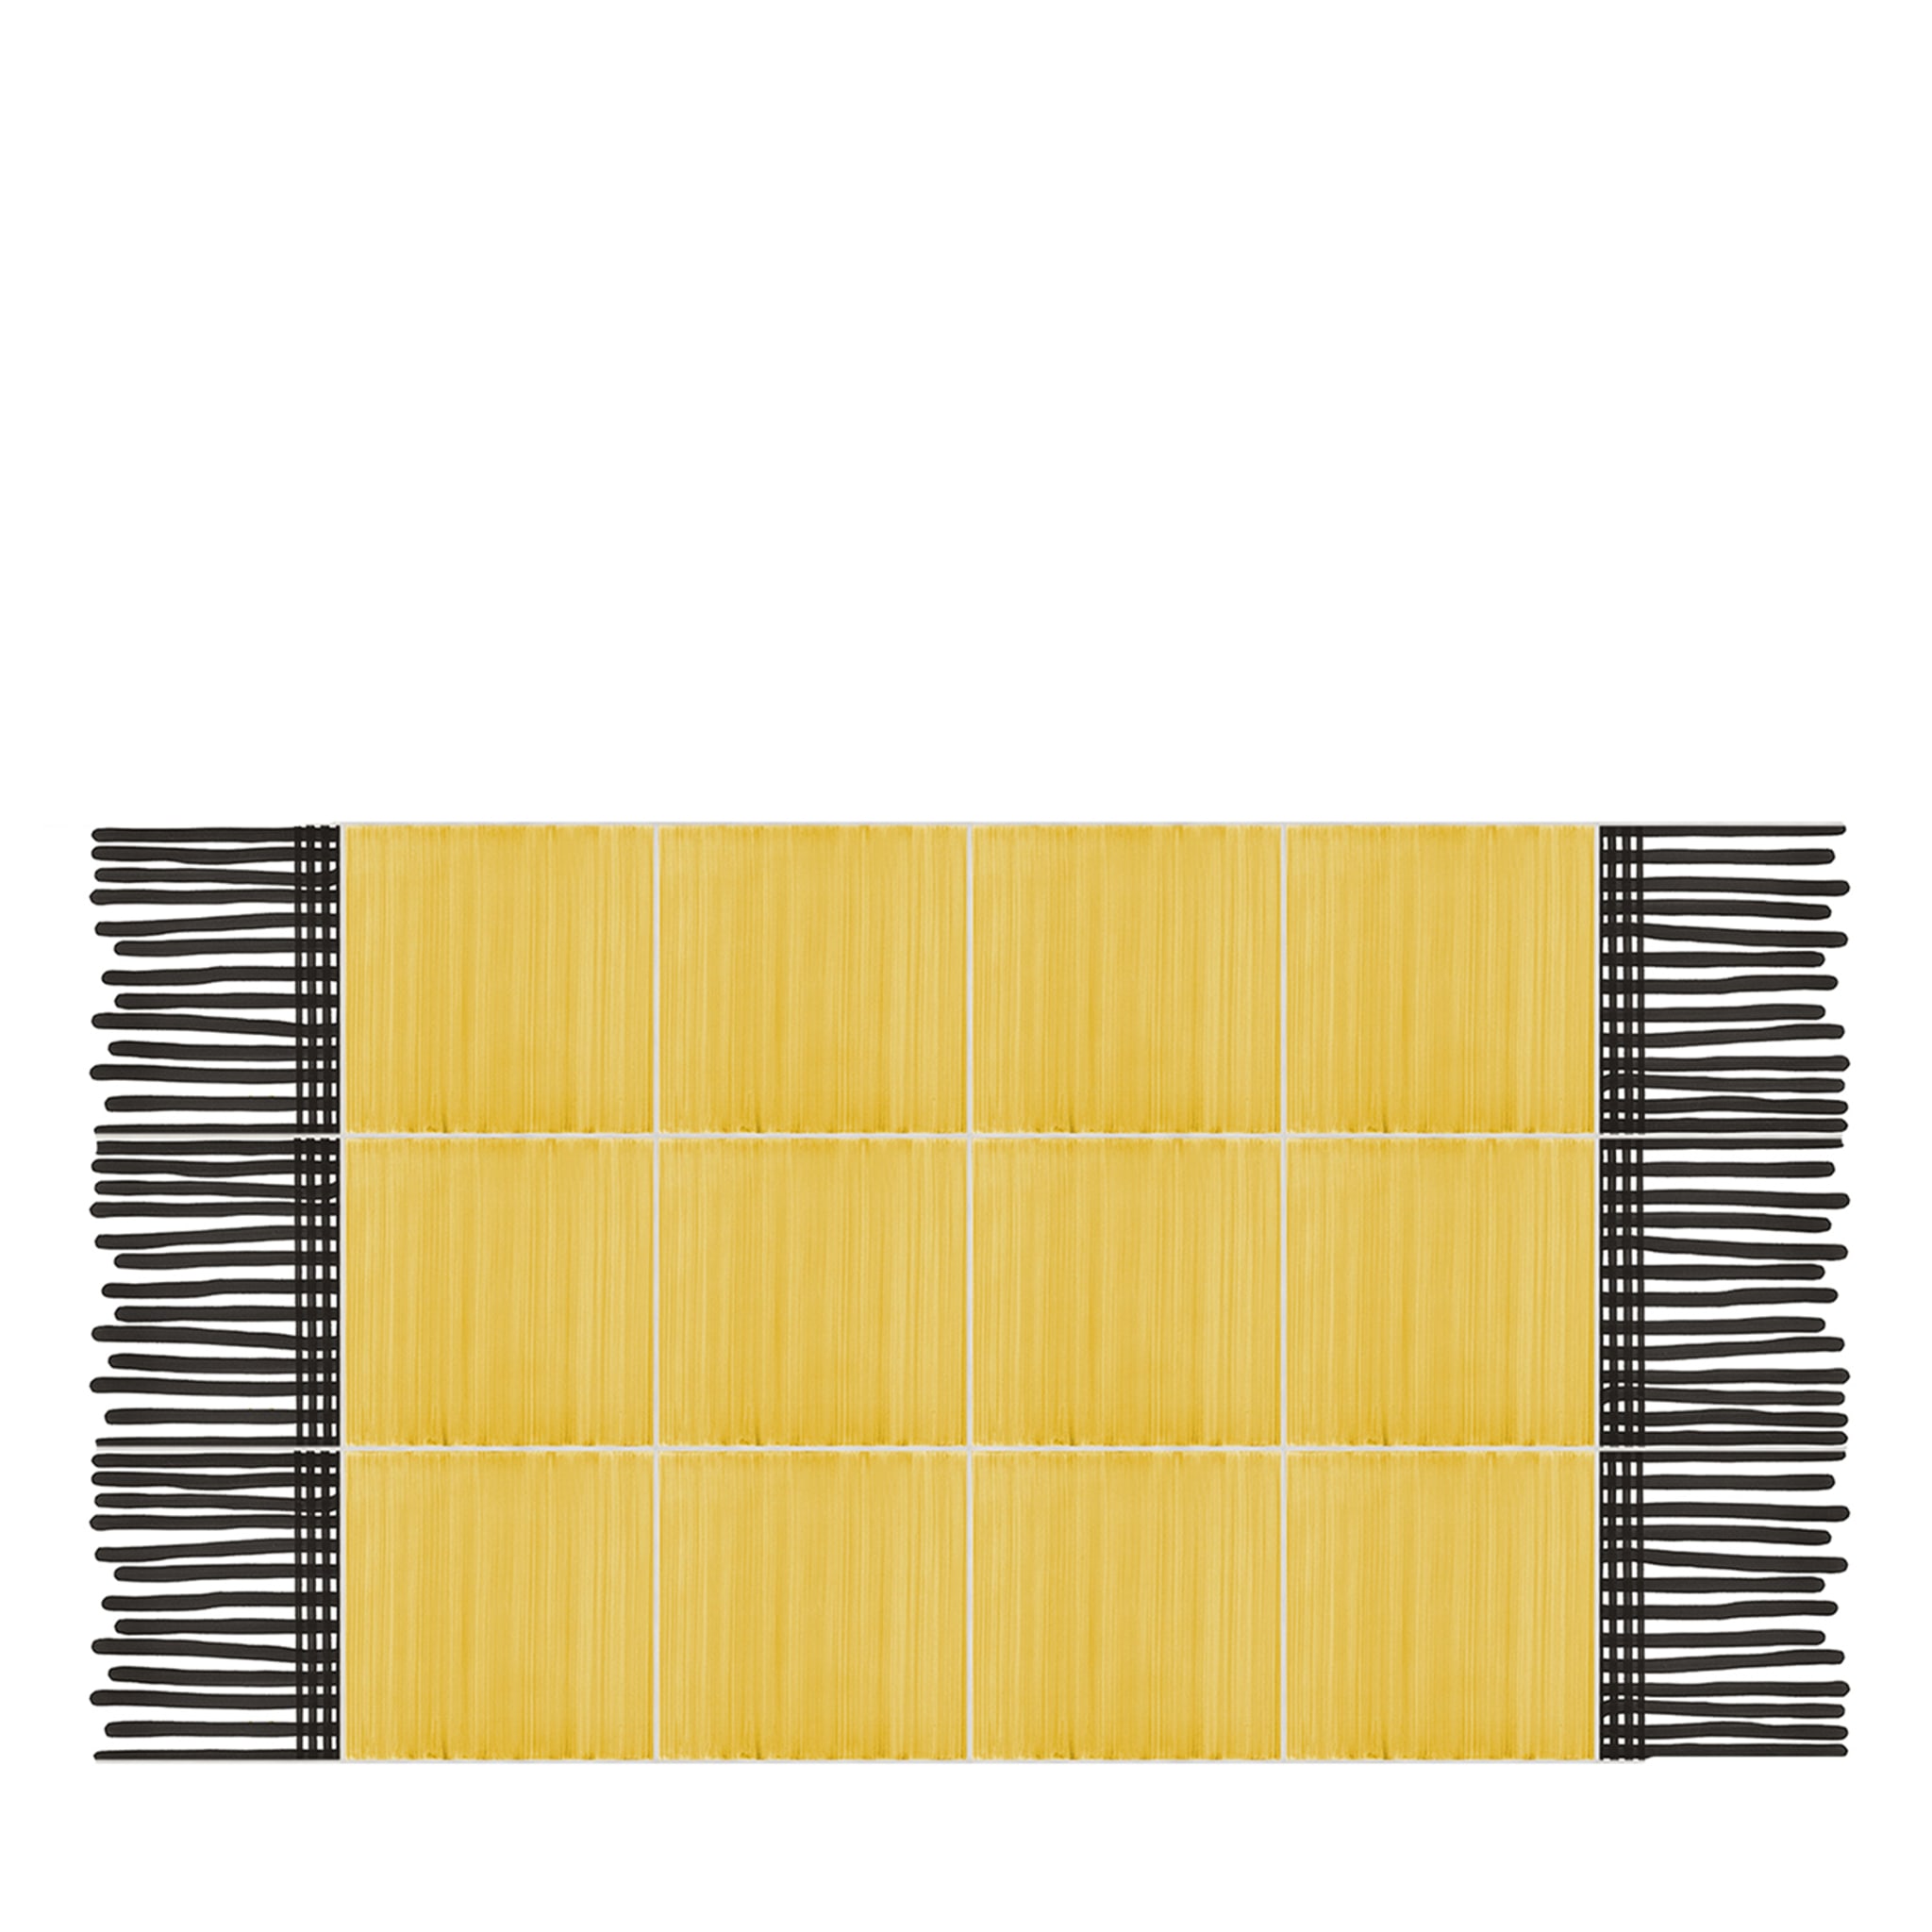 Carpet Total Yellow Ceramic Composition by Giuliano Andrea dell’Uva 120 X 60 - Main view